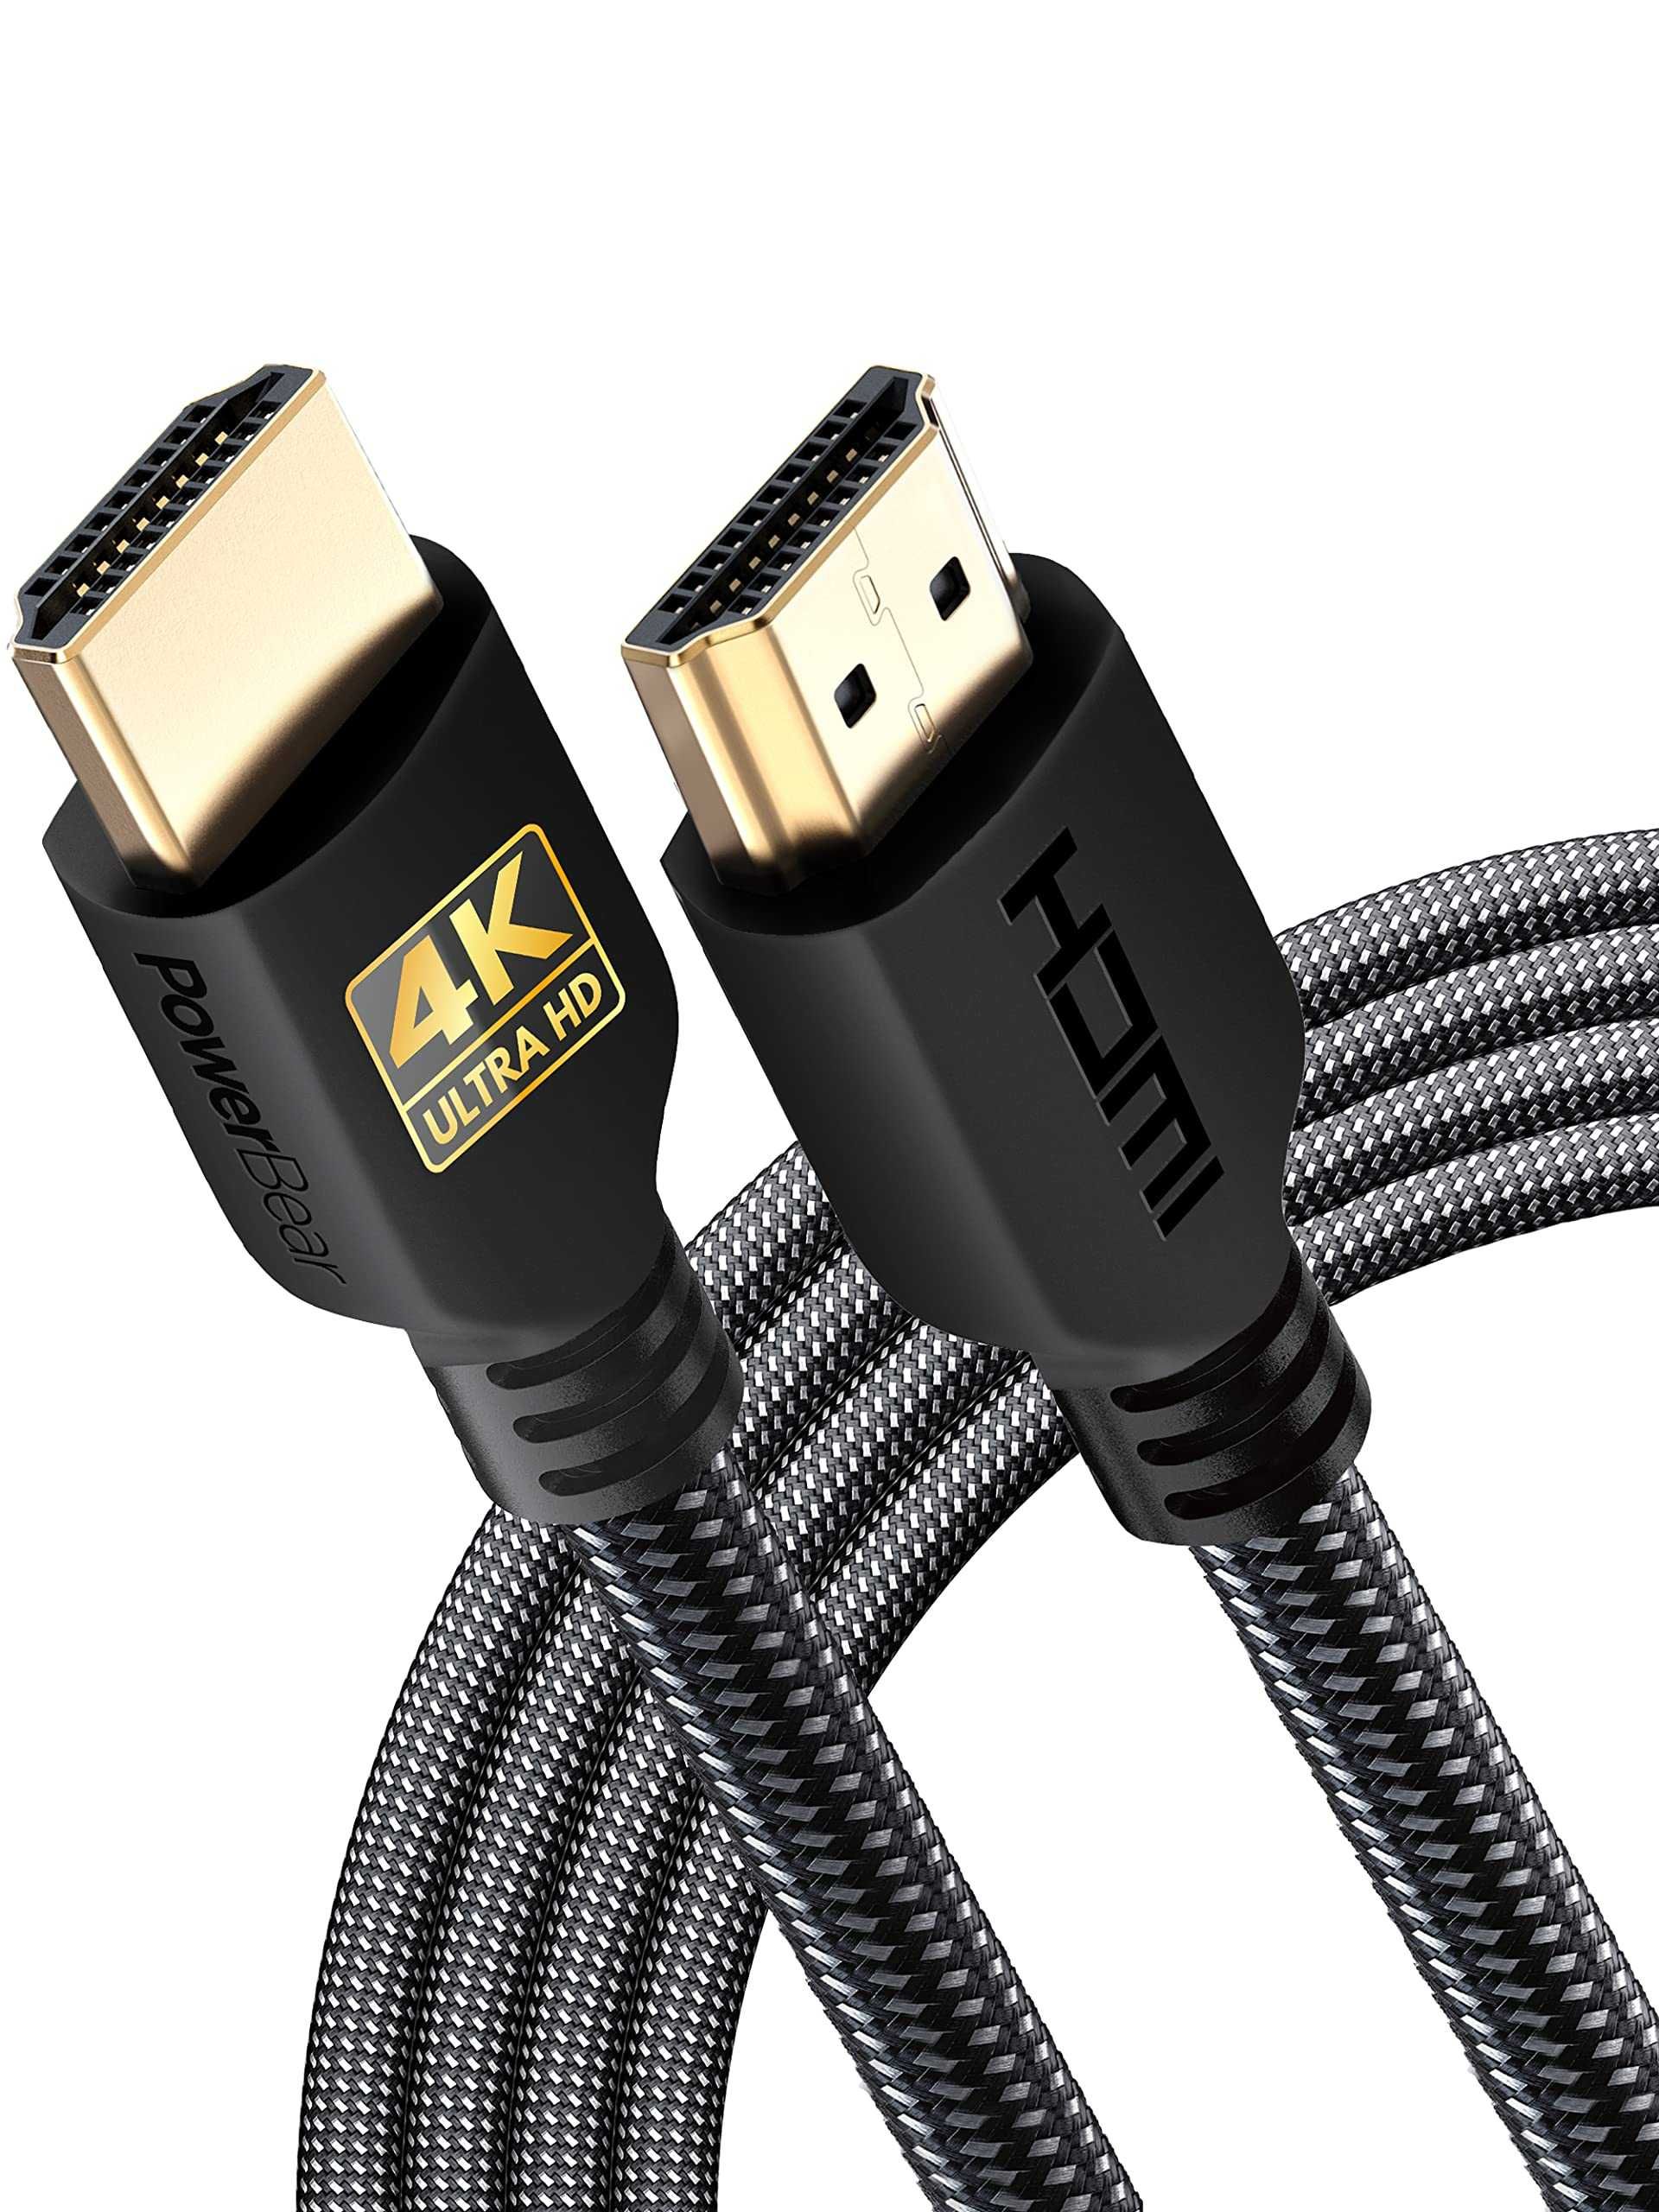 HDMI кабель 1.5 м 4K перечисление есть